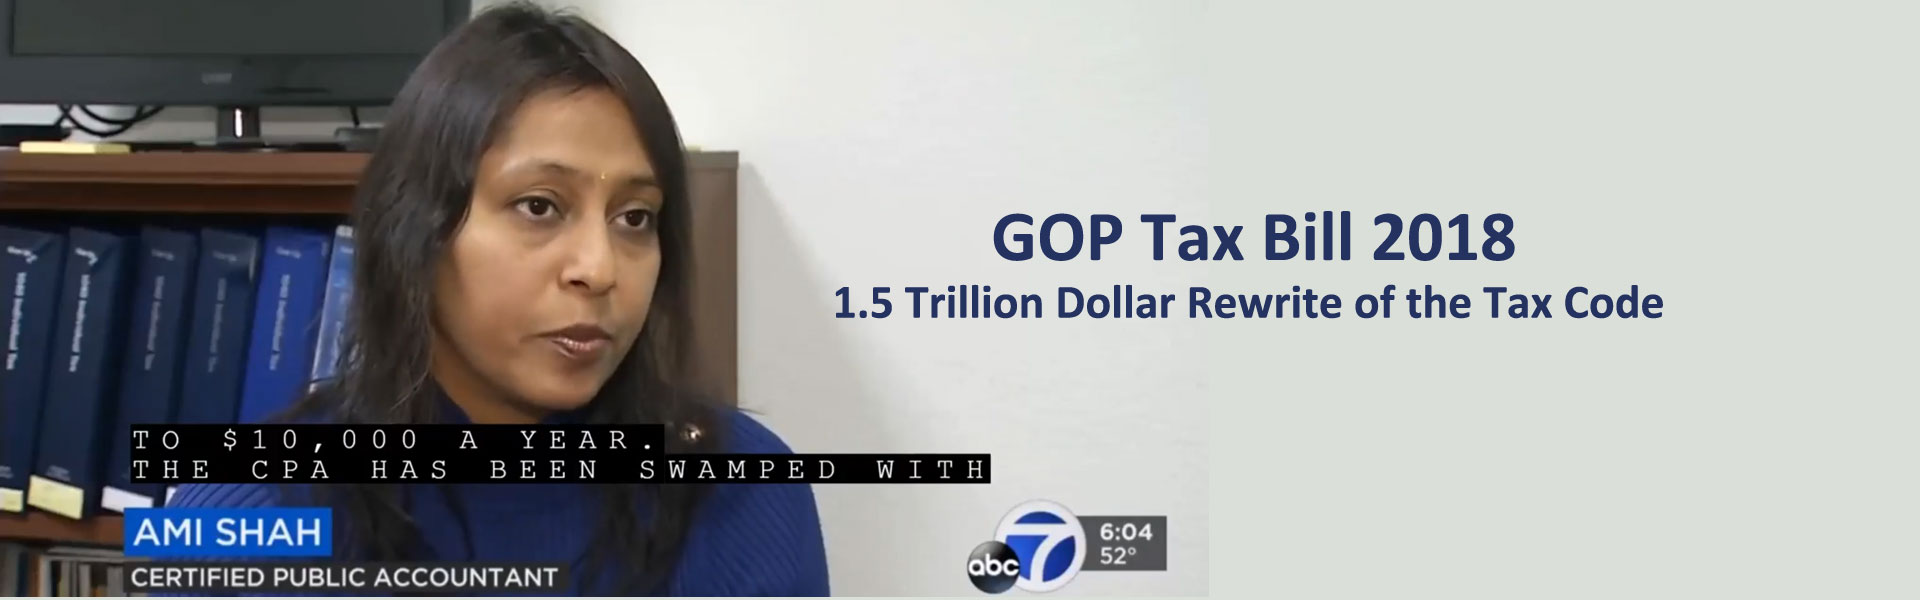 Amisha on ABC News about 2018 tax bill